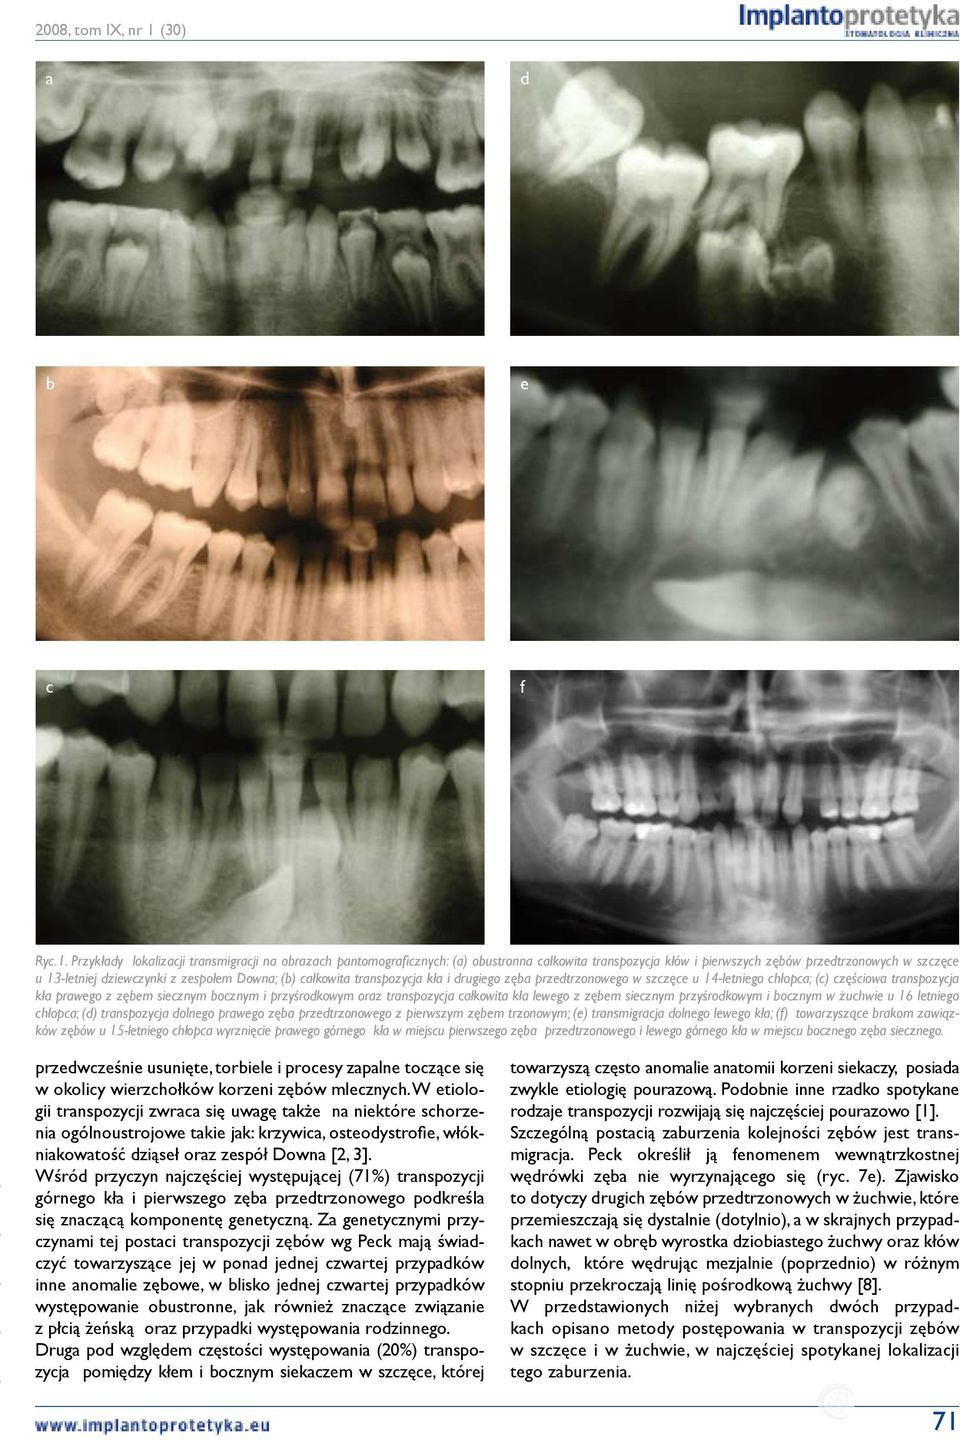 (b) całkowita transpozycja kła i drugiego zęba przedtrzonowego w szczęce u 14-letniego chłopca; (c) częściowa transpozycja kła prawego z zębem siecznym bocznym i przyśrodkowym oraz transpozycja